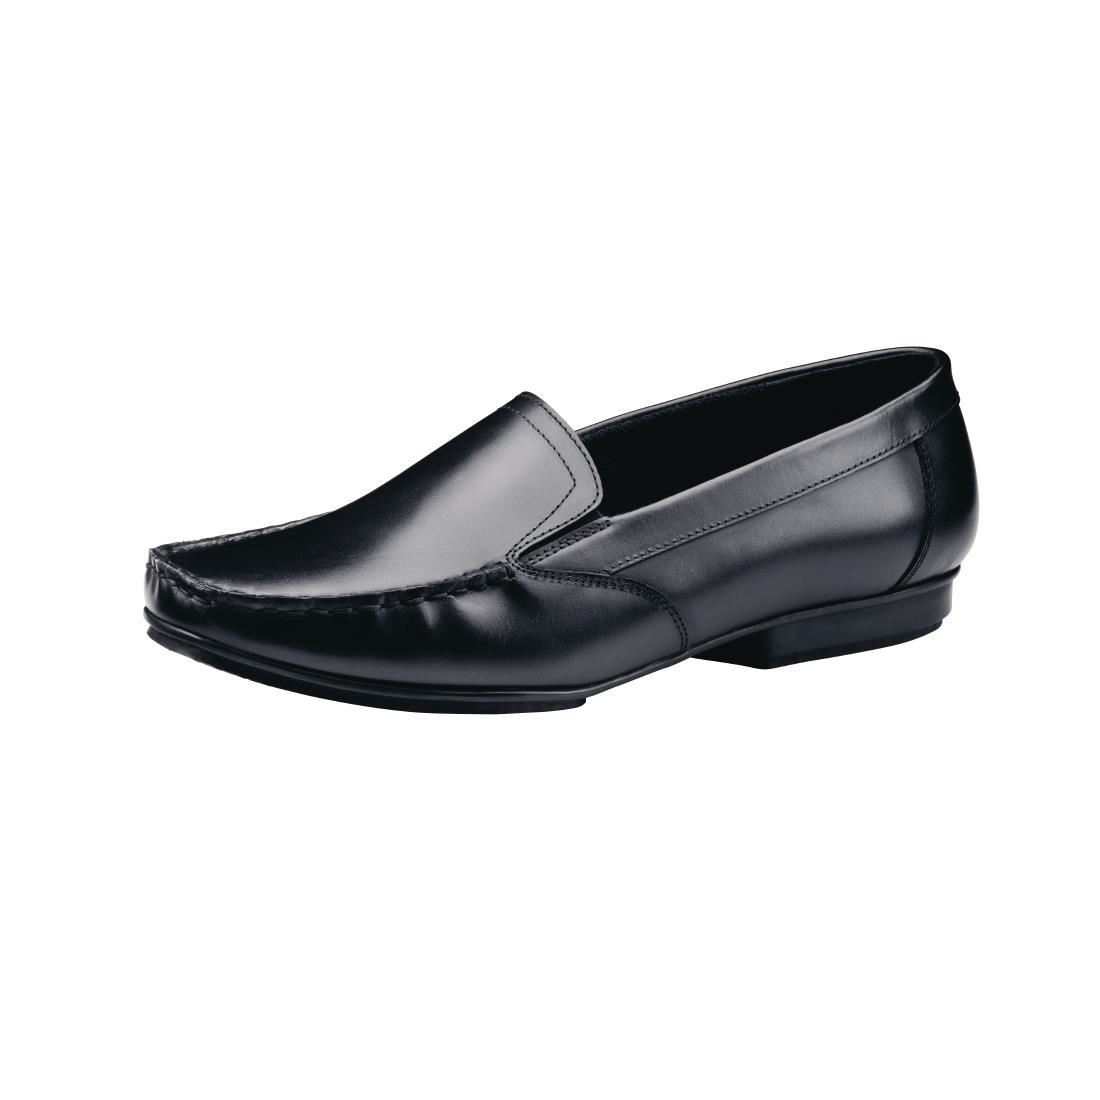 Shoes for Crews Jenni Slip On Dress Shoe Black Size 41 - BB587-41  - 1